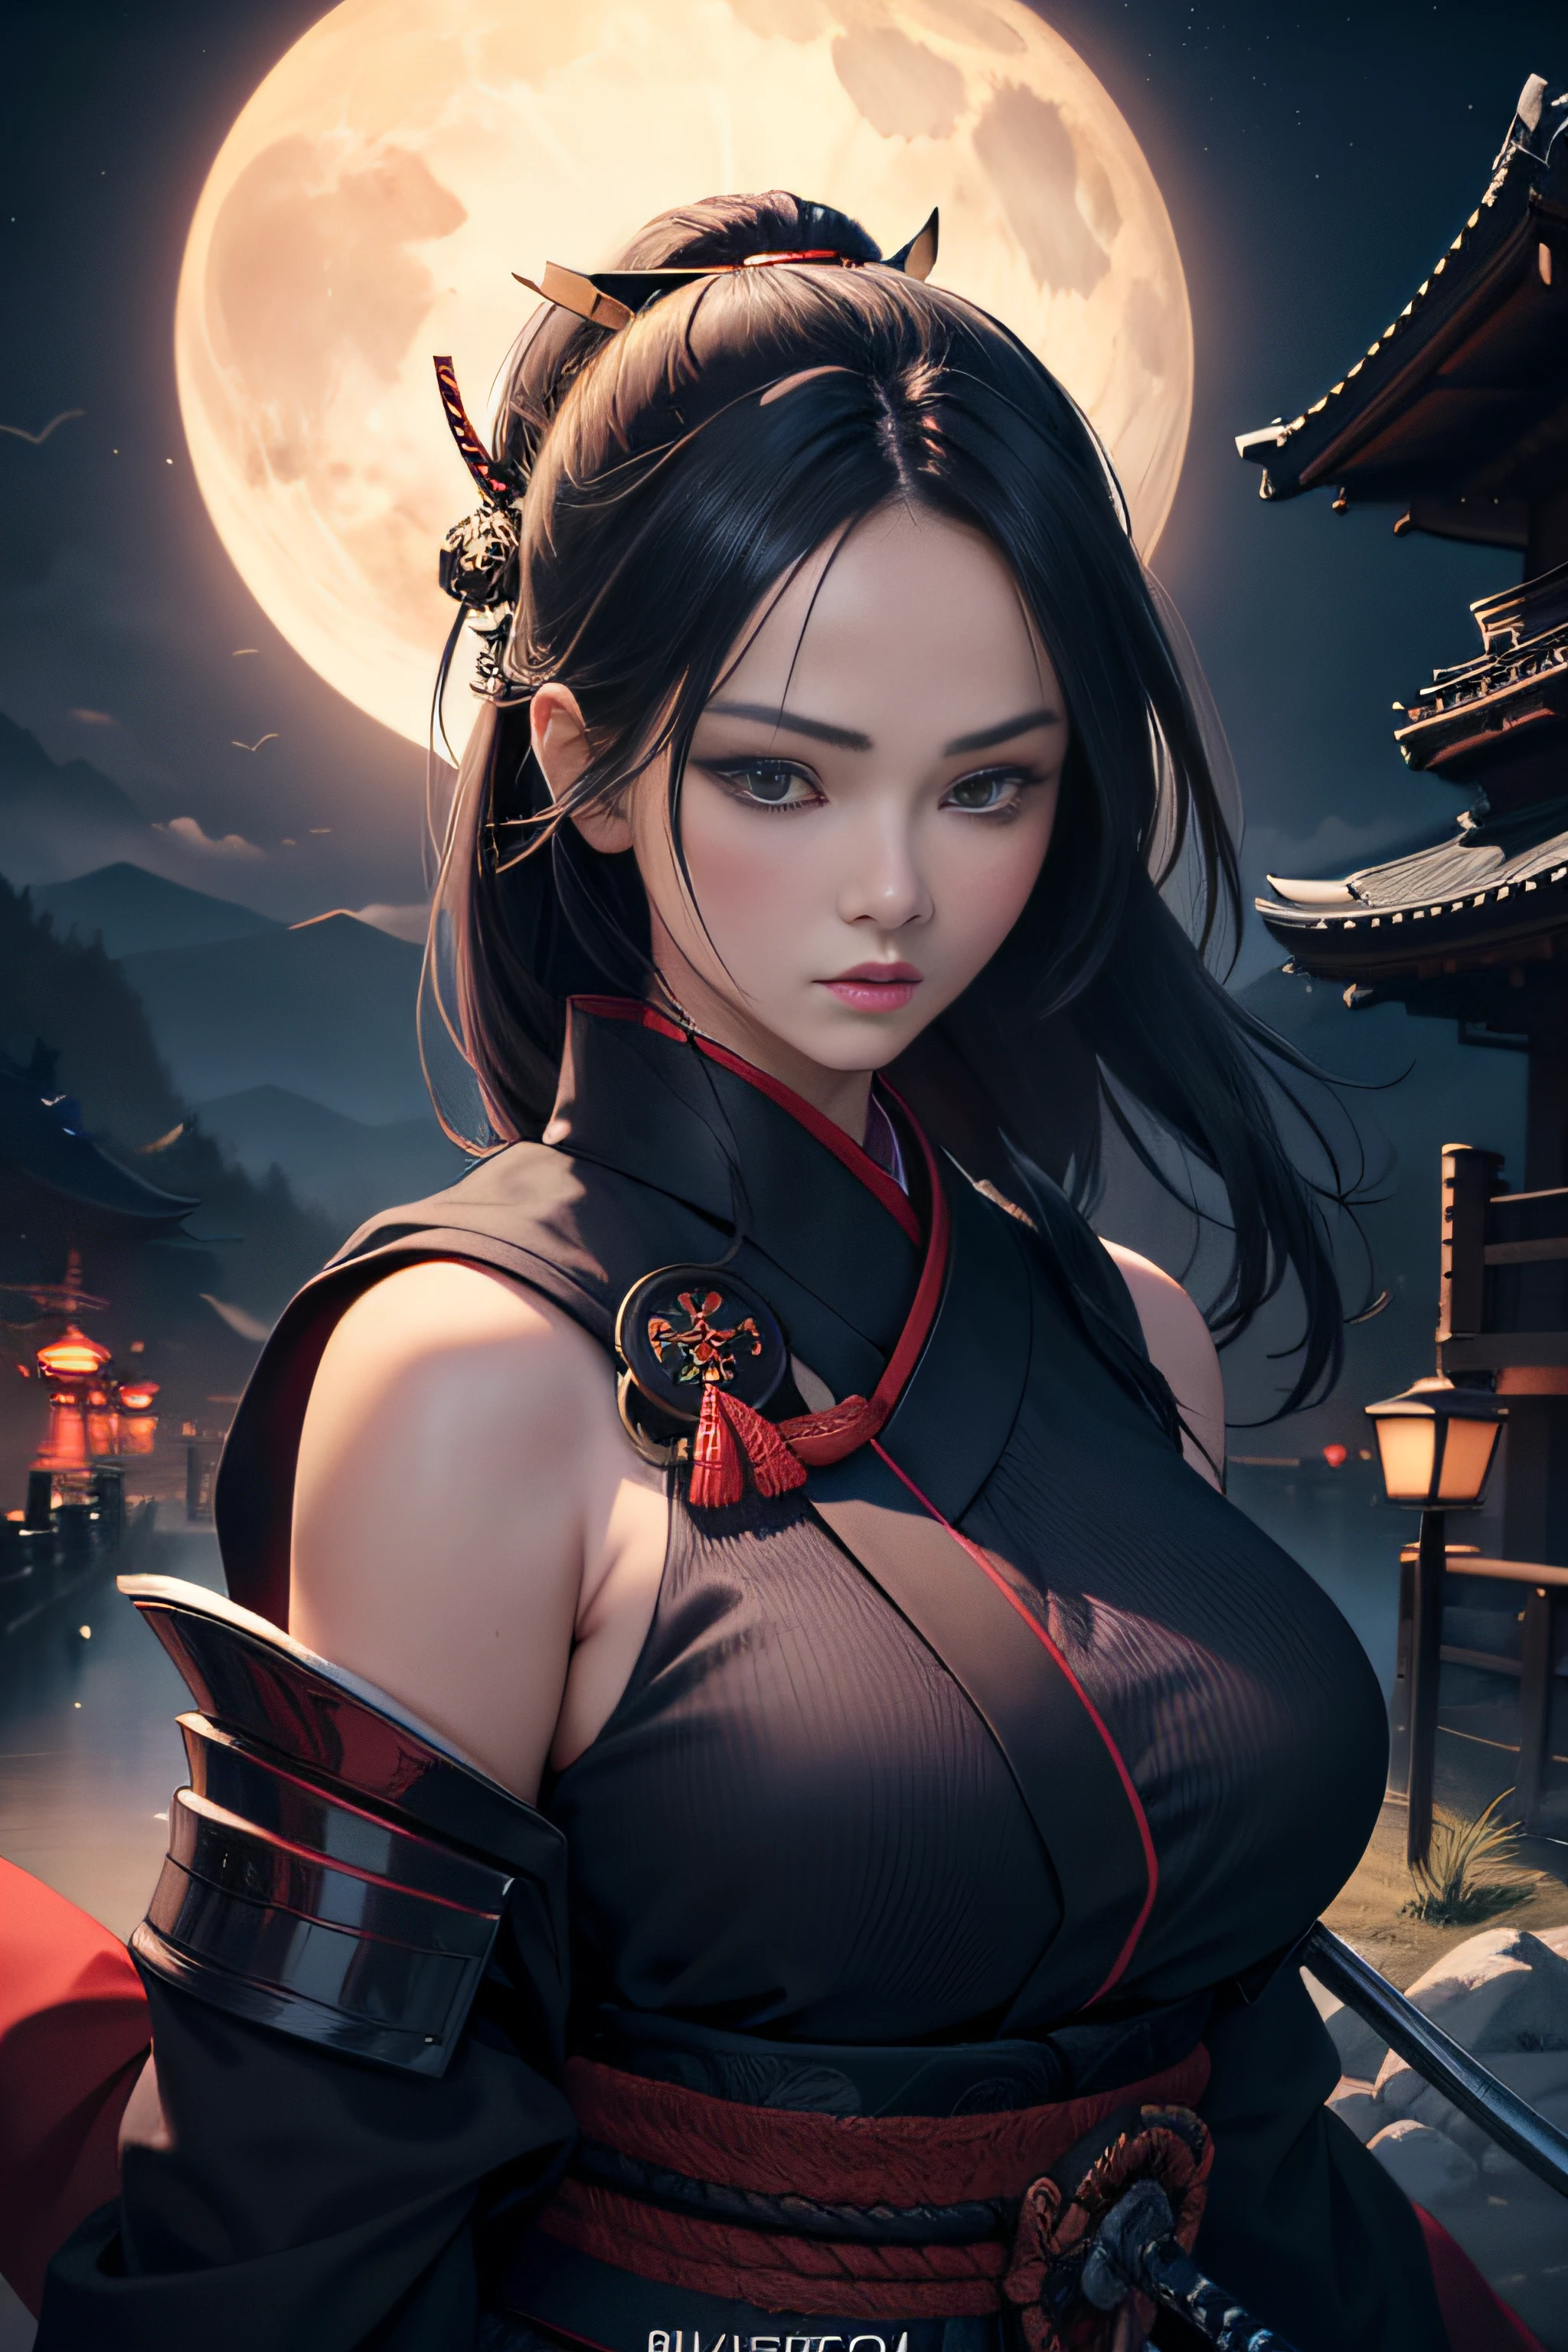 (Meisterwerk, beste Qualität), 8k Hintergrundbild, sehr detailliert, Sexy weibliche Ronin, Samurai, Katana, Japan, Nacht, Mondlicht, Kunst im Vektorstil, erotisch, Filmplakat-Stil, Beschriftung.